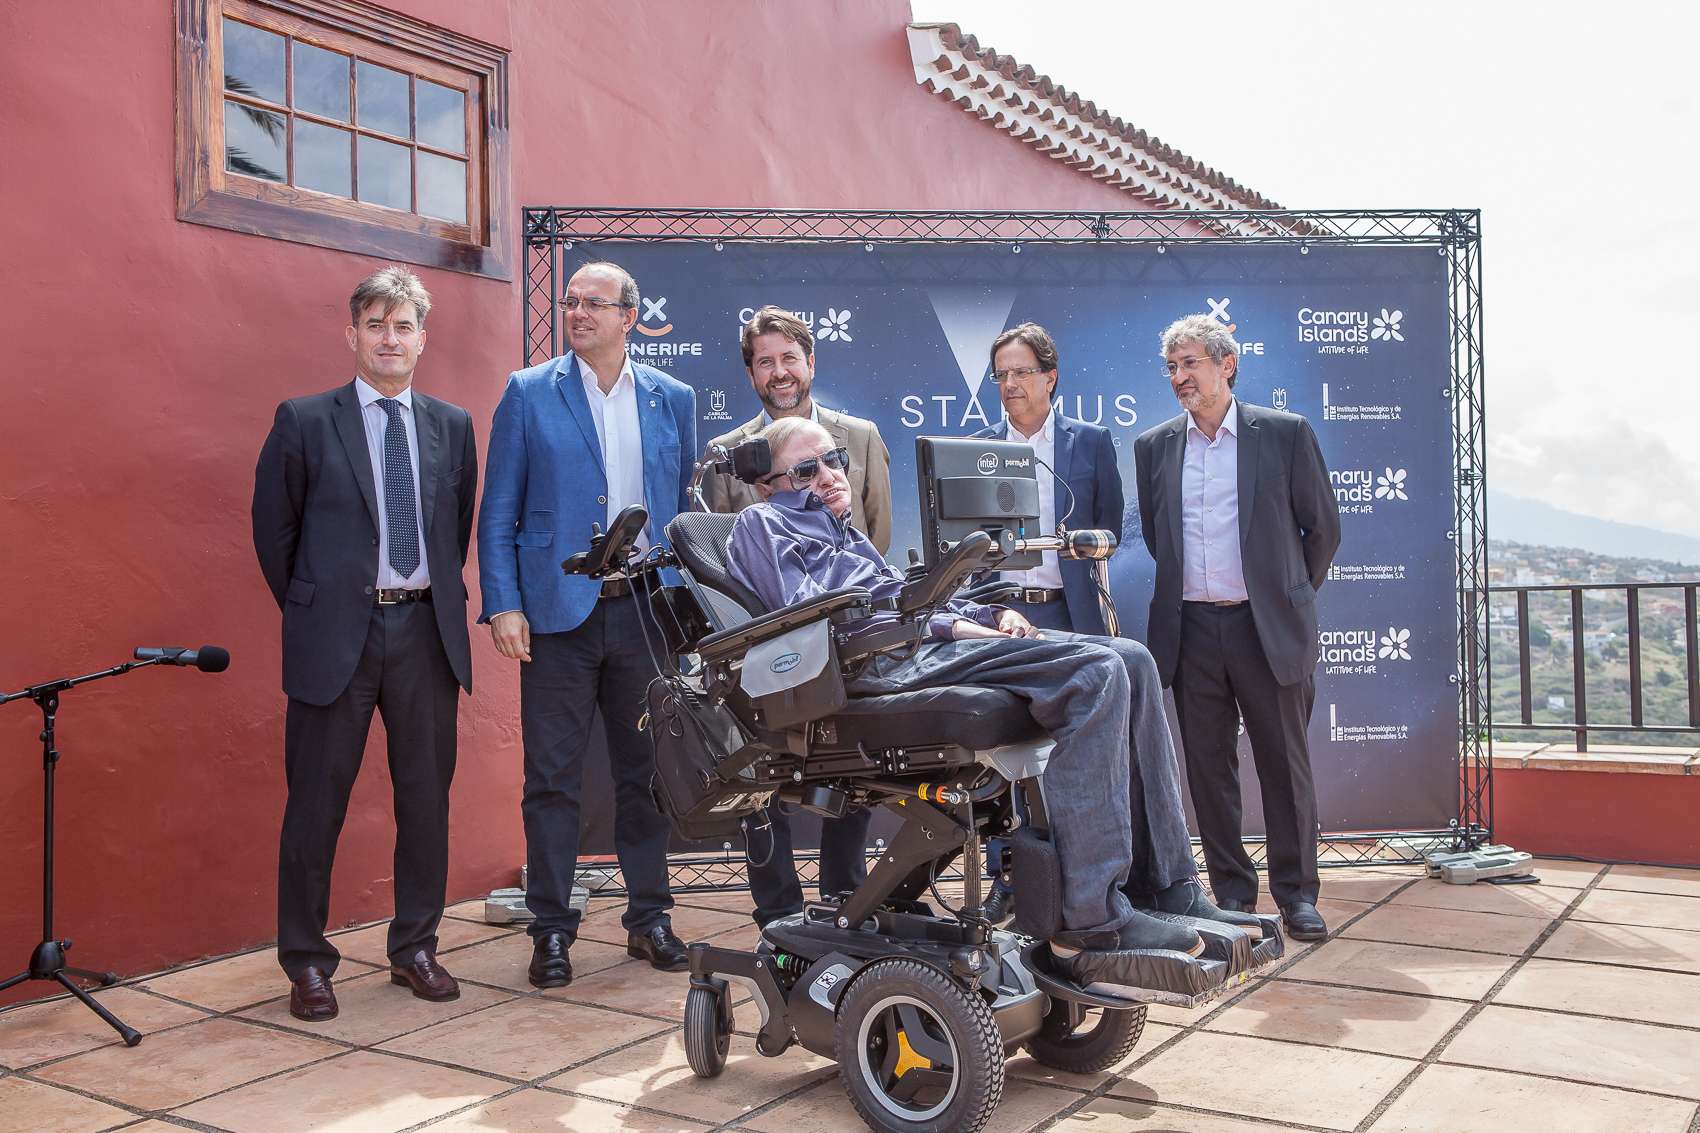 Stephen Hawking presenta en Tenerife la tercera edición del Starmus Festival - Diario de Tenerife